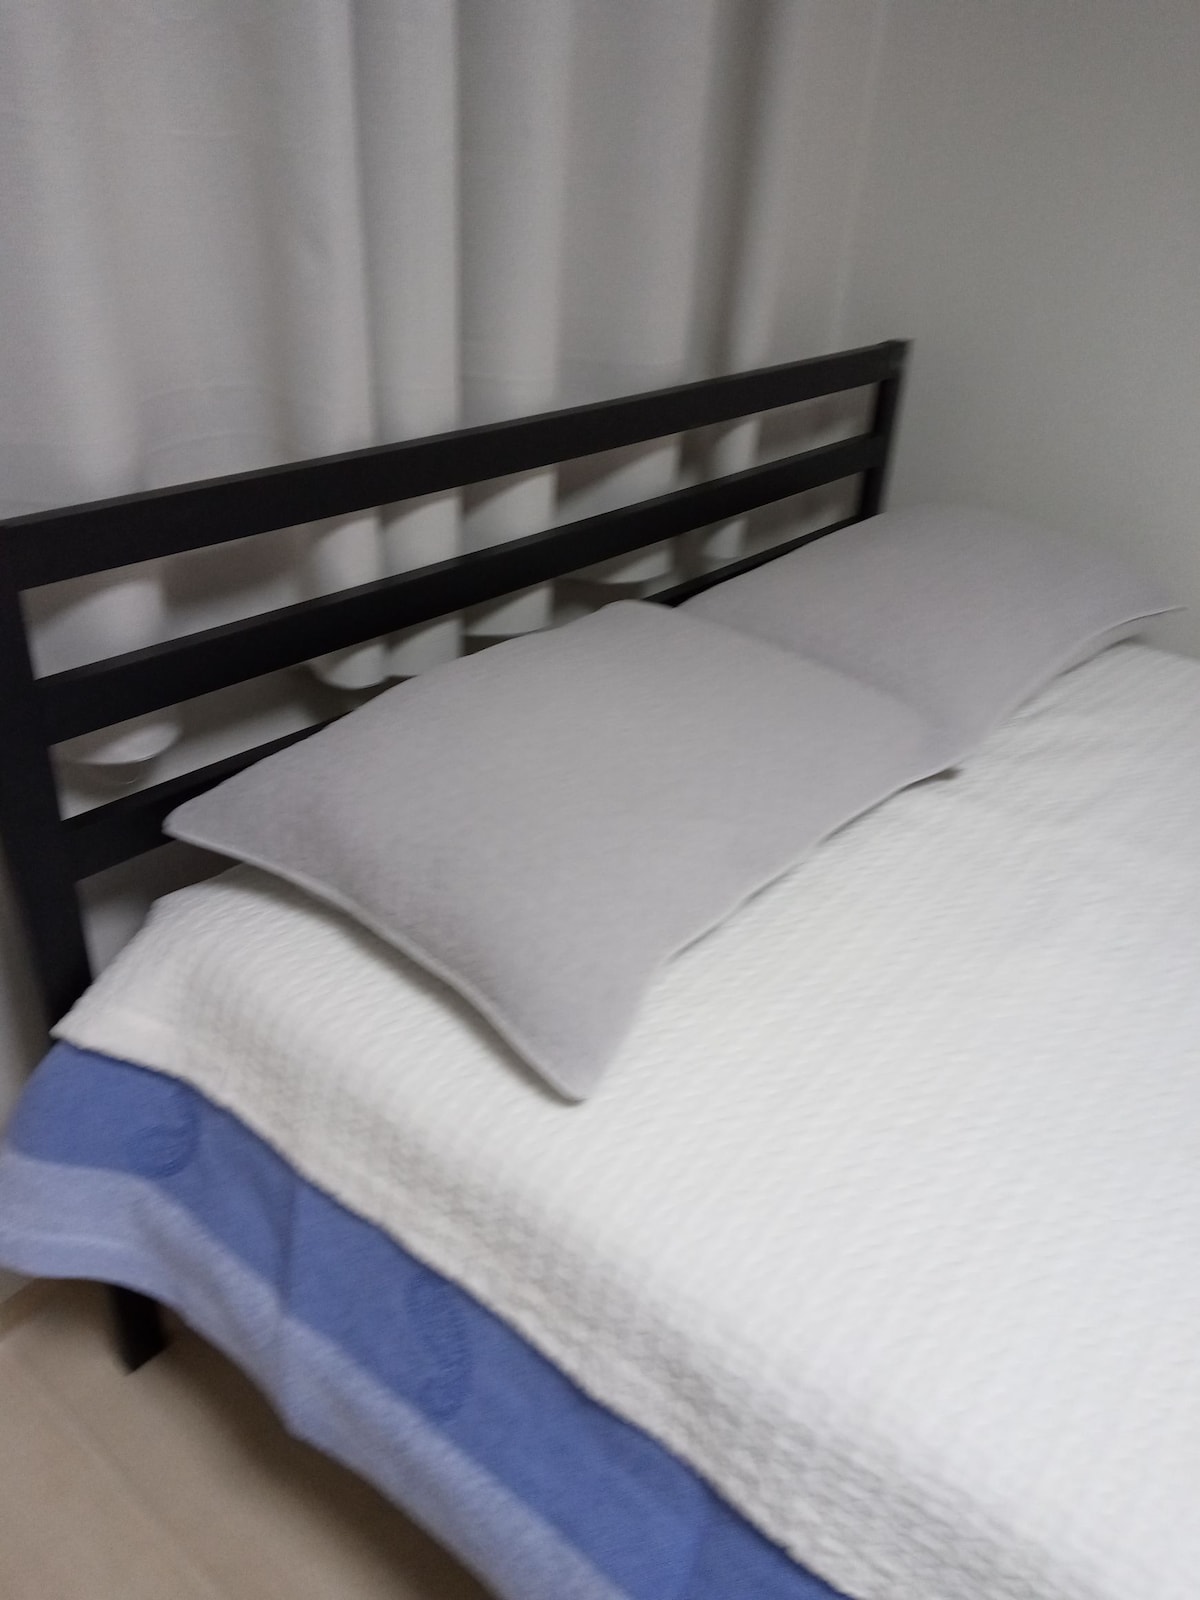 梦幻之家2张标准双人床1超级单人舒适住宿